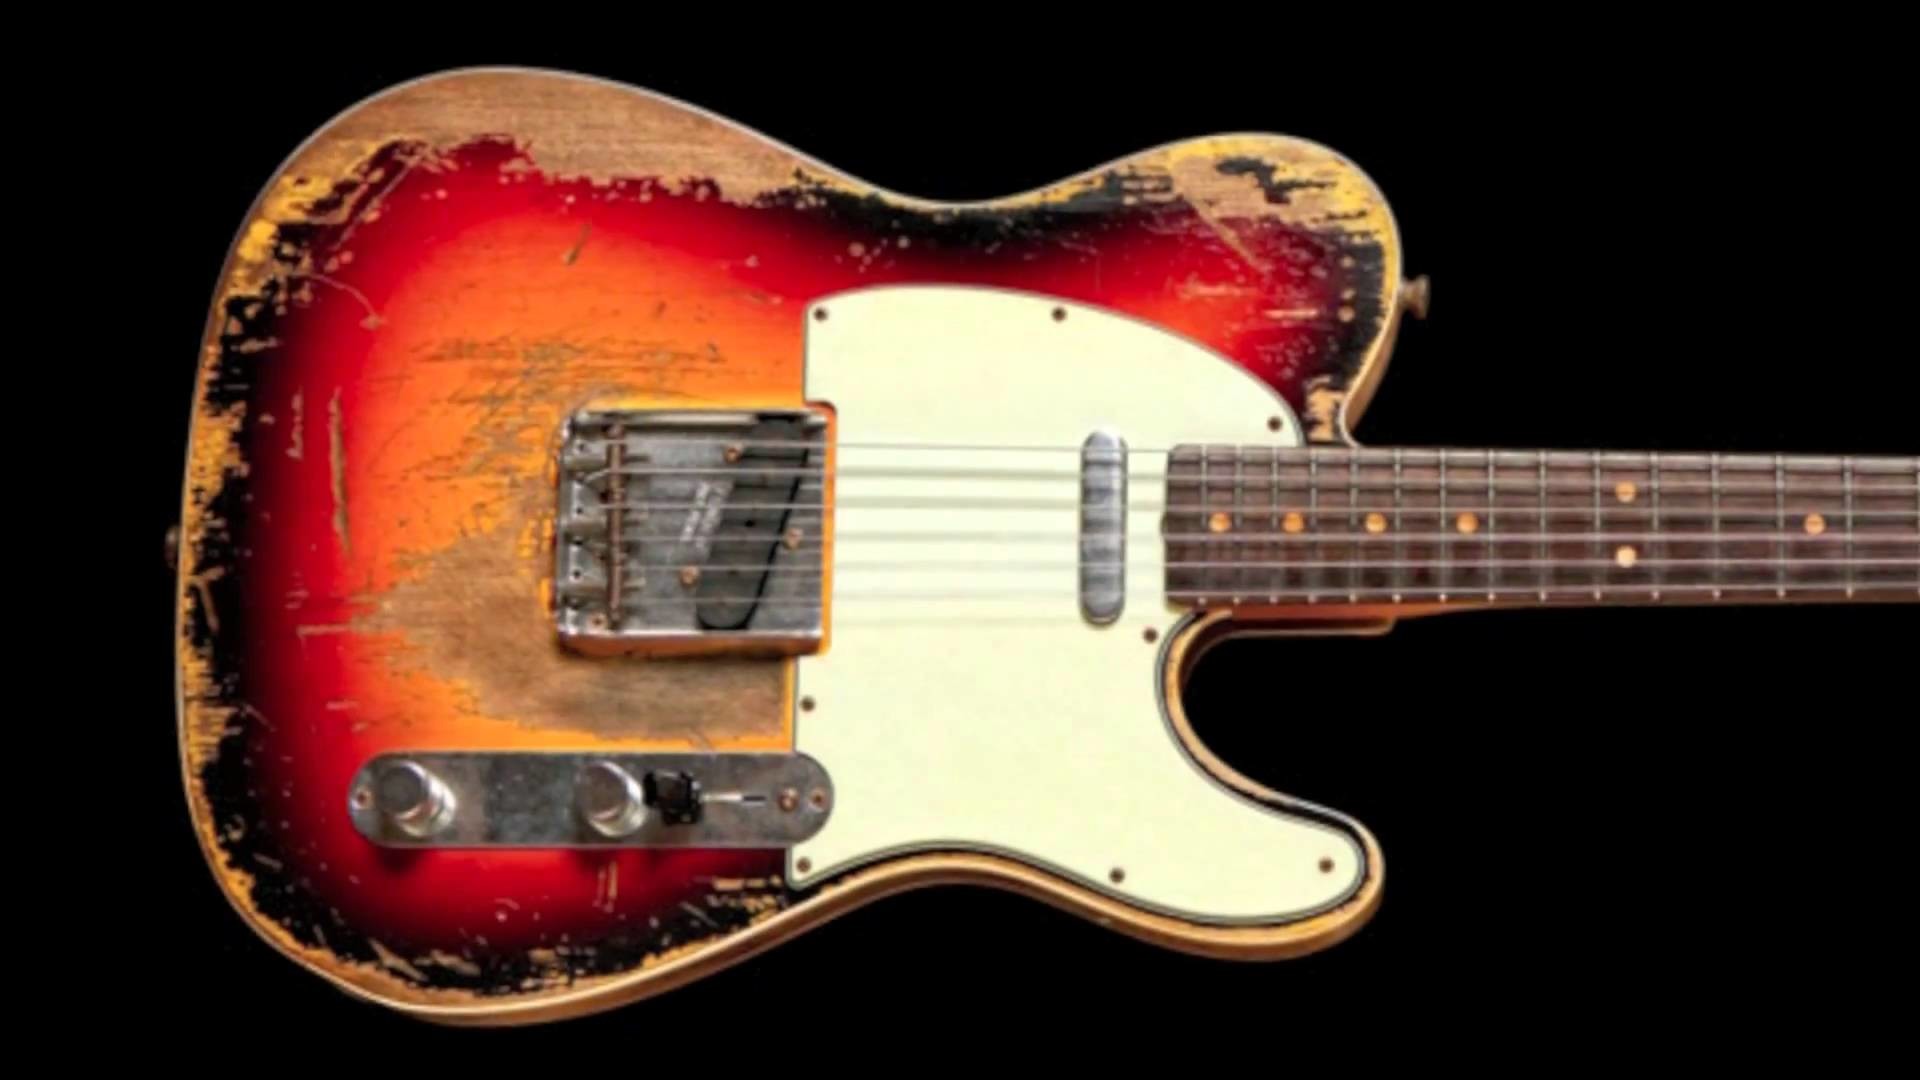 Fender Telecaster Wallpaper Guitar String Instrument Musical Instrument Plucked String Instruments String Instrument Wallpaperuse